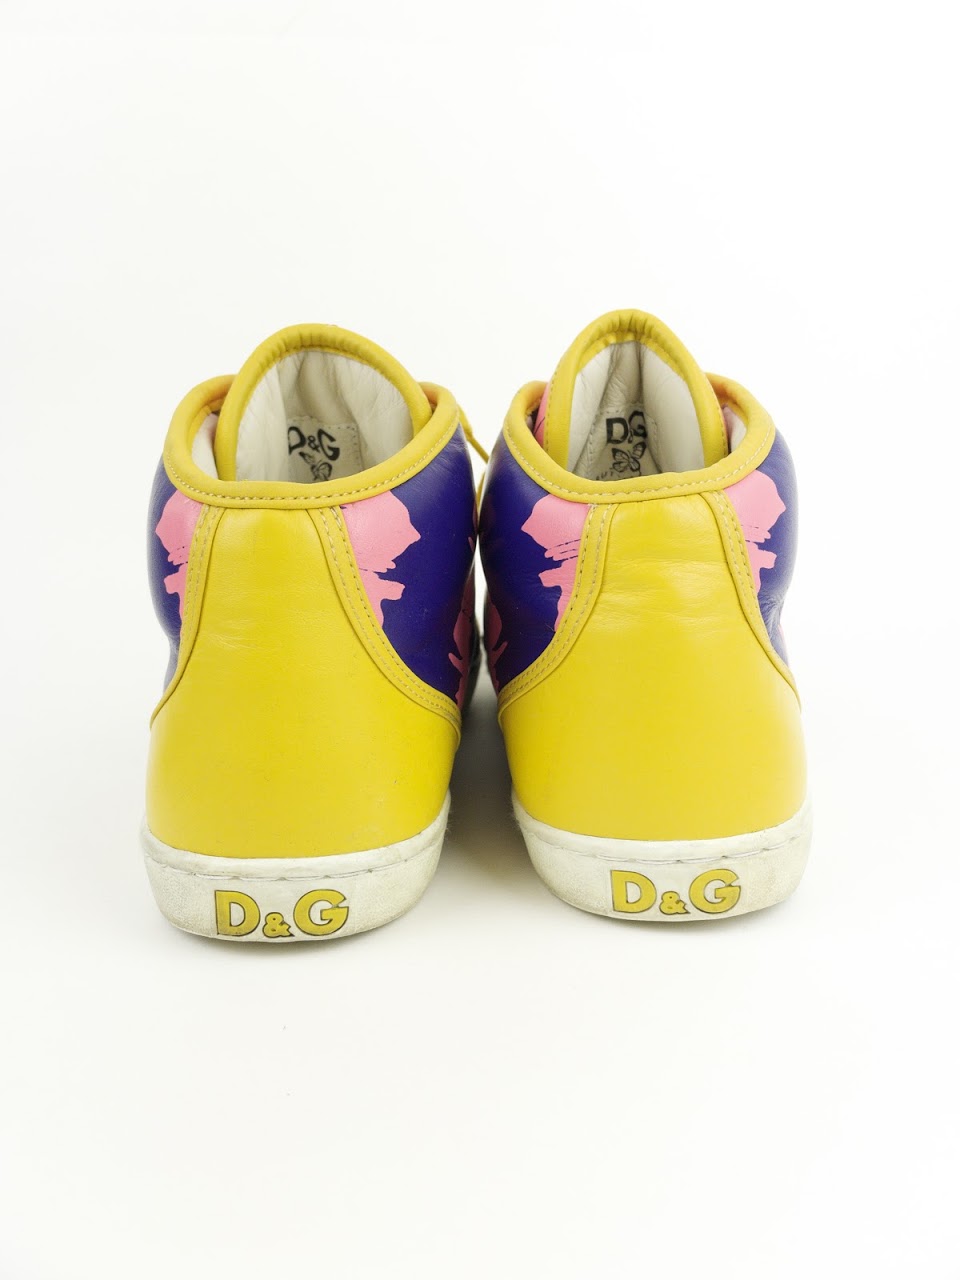 Dolce & Gabbana Butterfly Scribble Sneakers